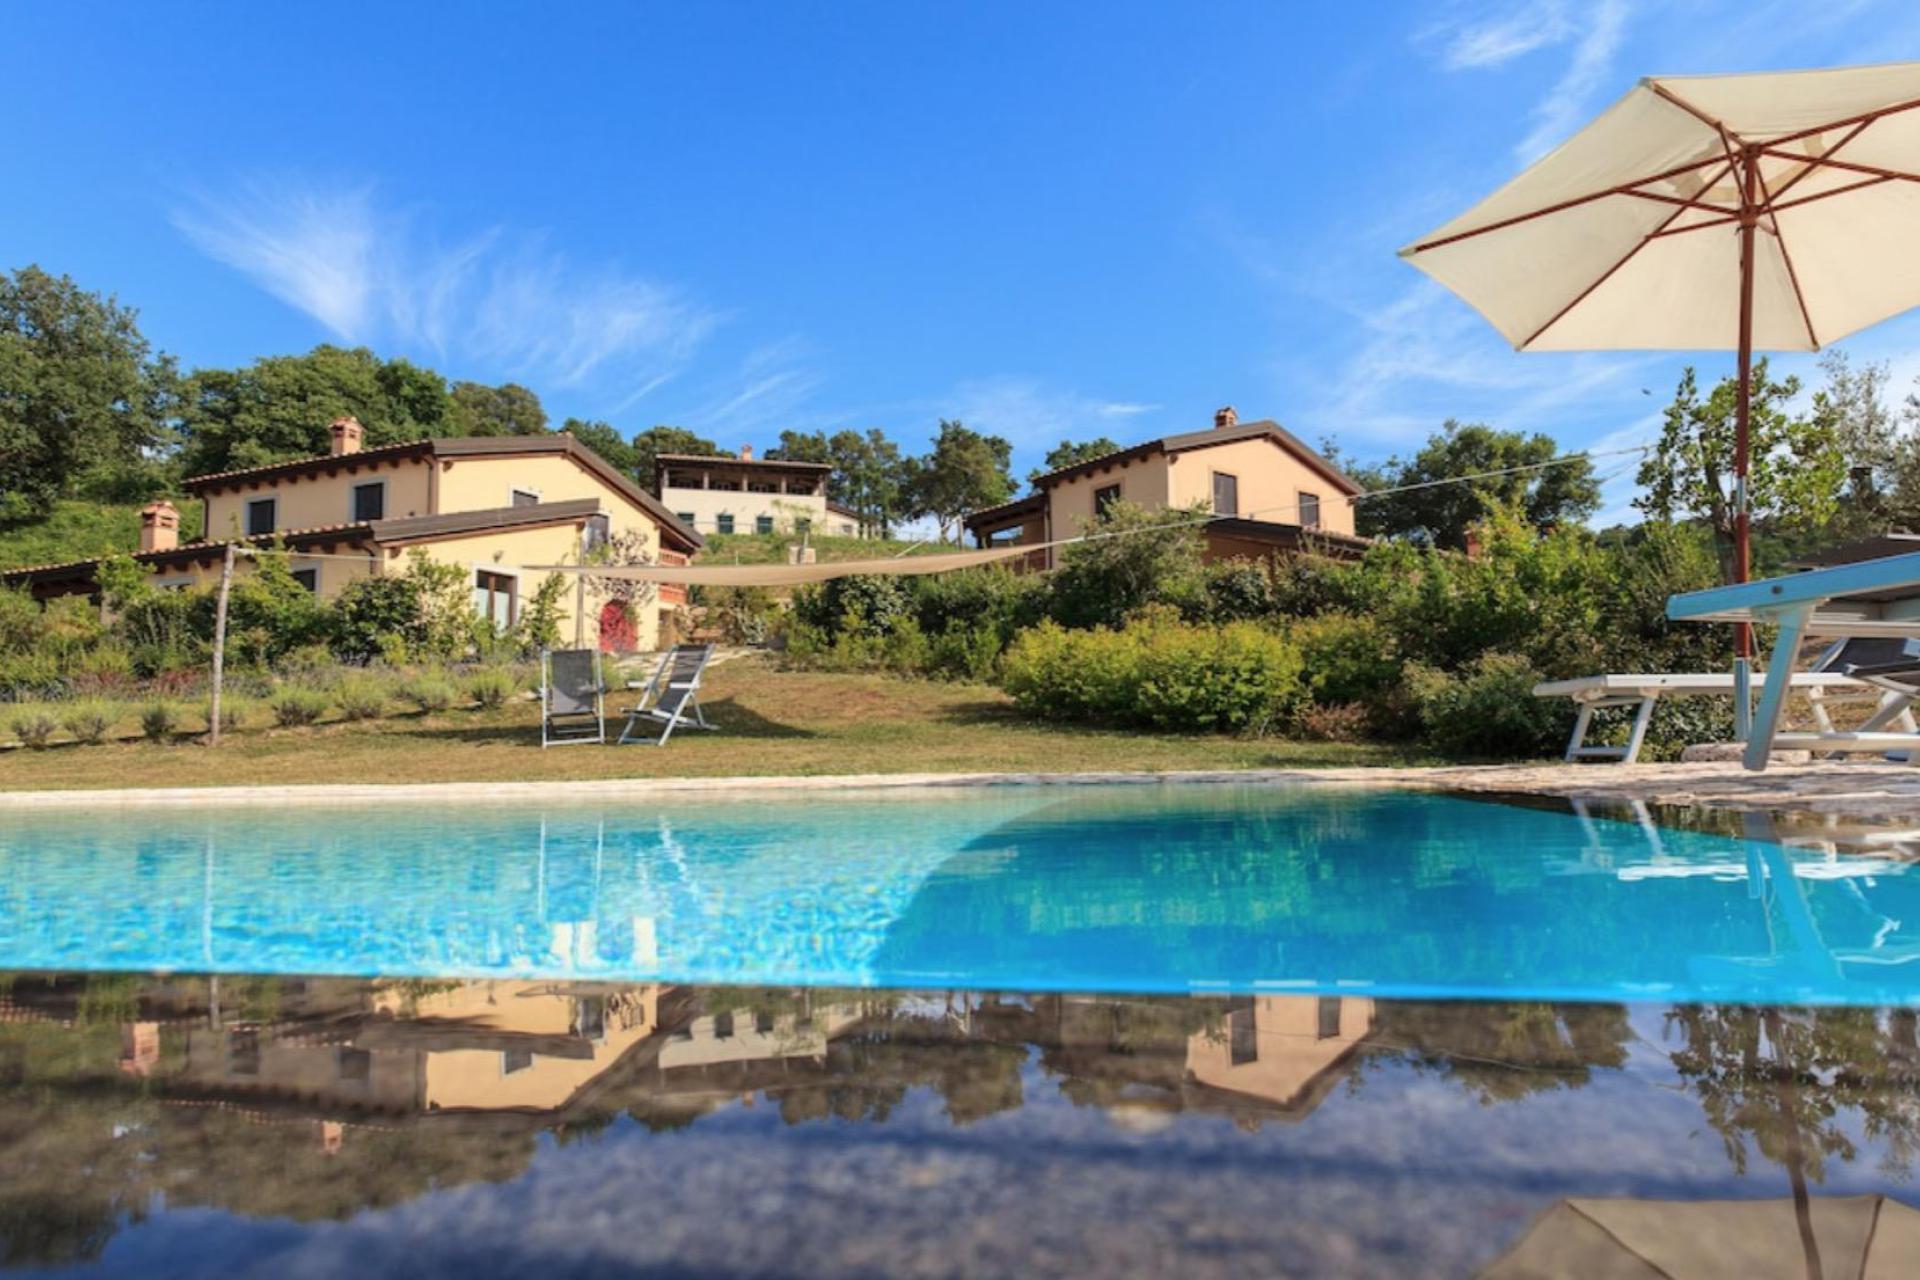 Agriturismo met luxe huizen op een heuvel in Toscane